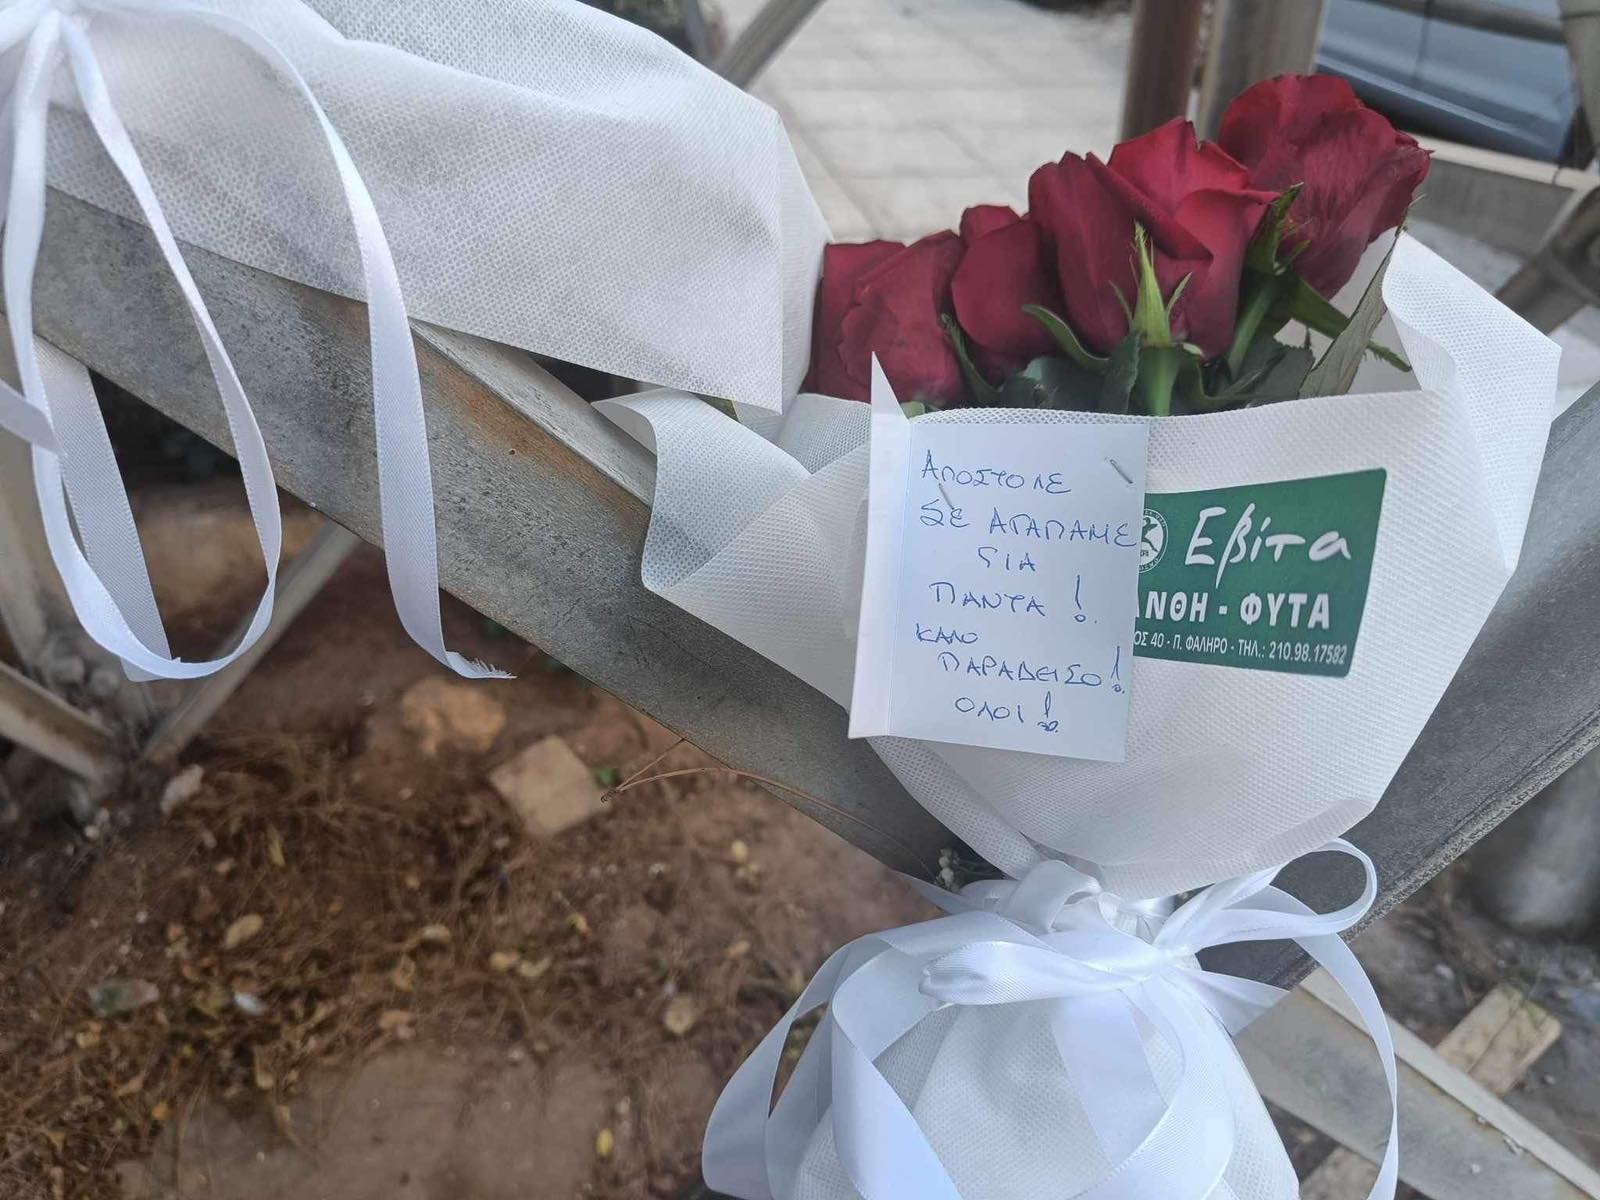 Παλαιό Φάληρο: Ο δημοσιογράφος Απόστολος Φουρνατζόπουλος ο νεκρός σε πυλώνα ηλεκτρικού ρεύματος